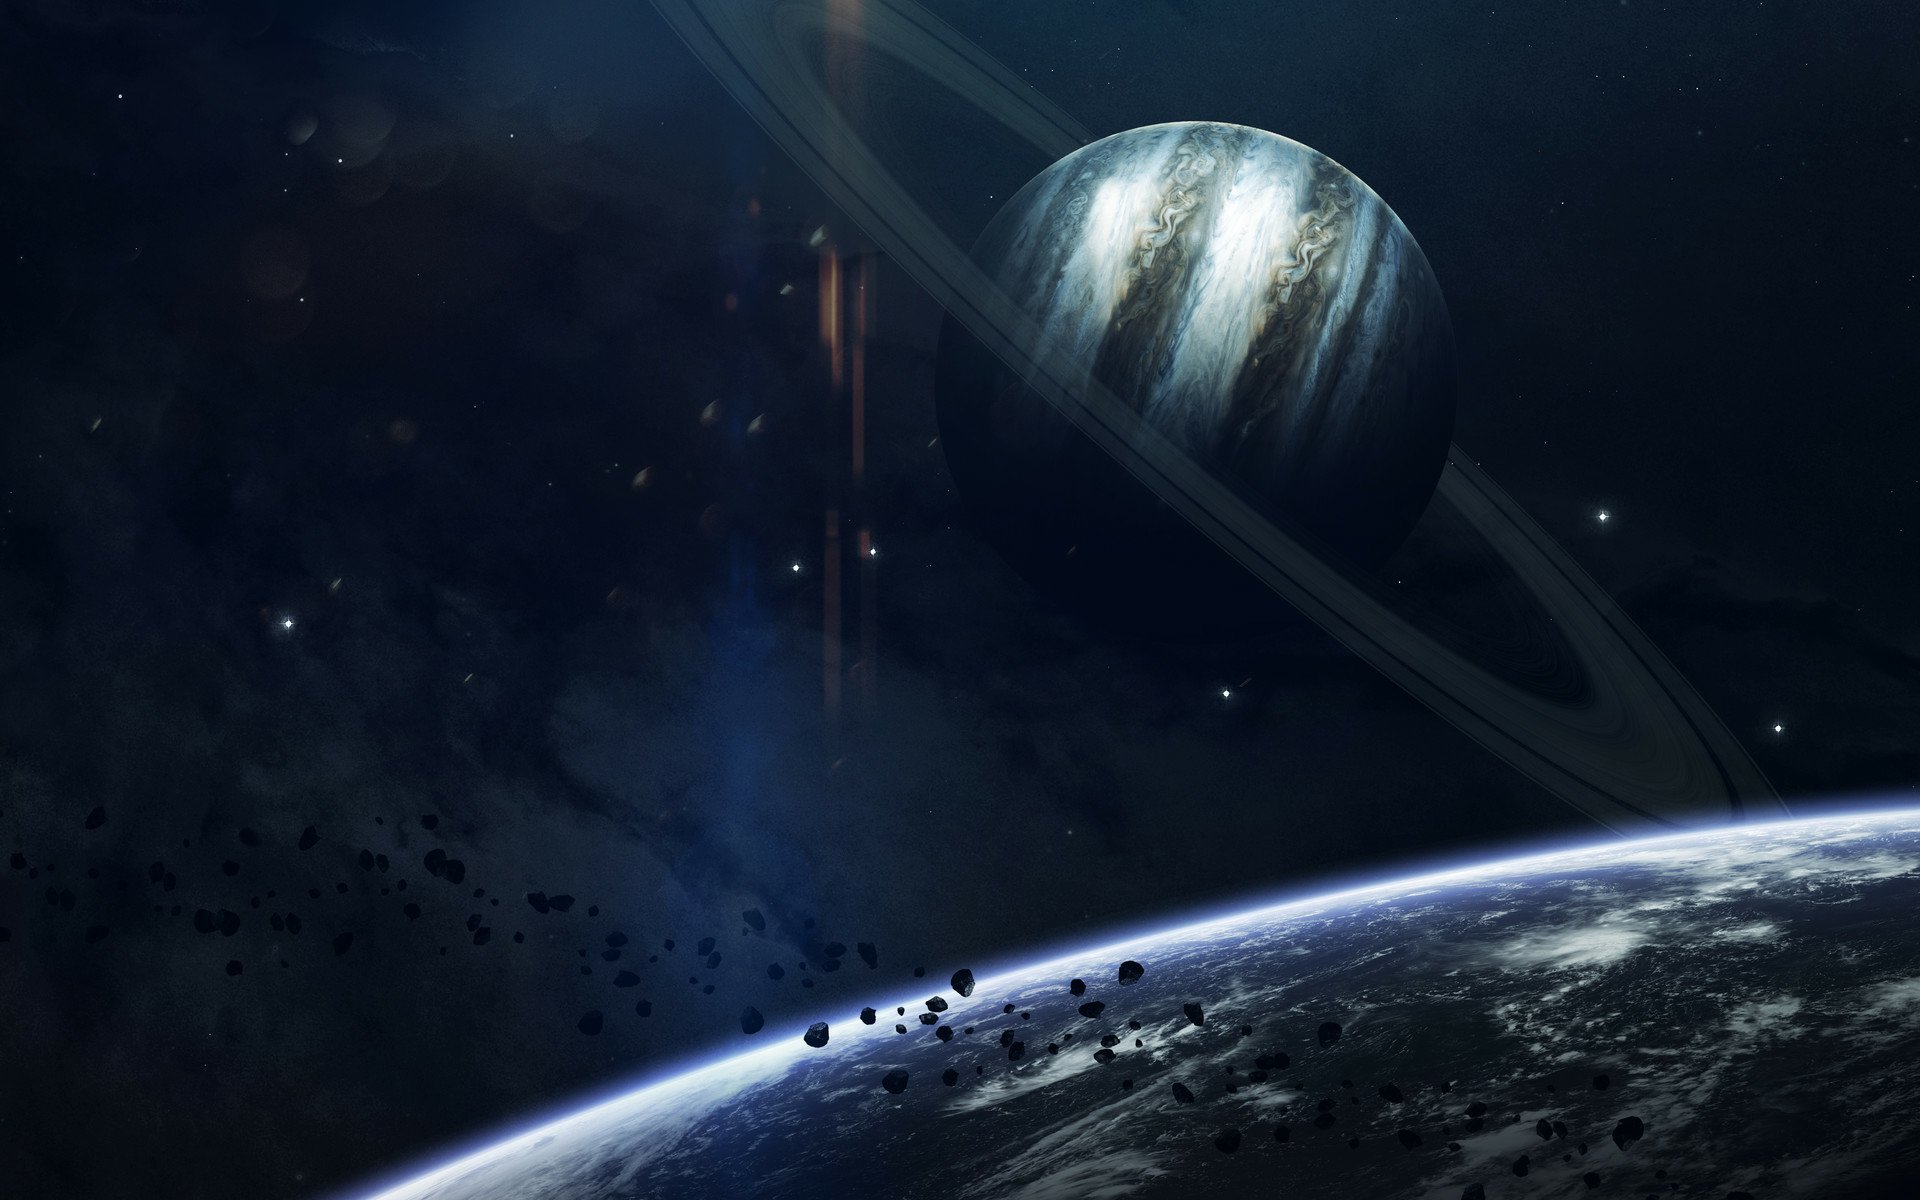 Sci Fi Planet Hd Wallpaper By Vadim Sadovski